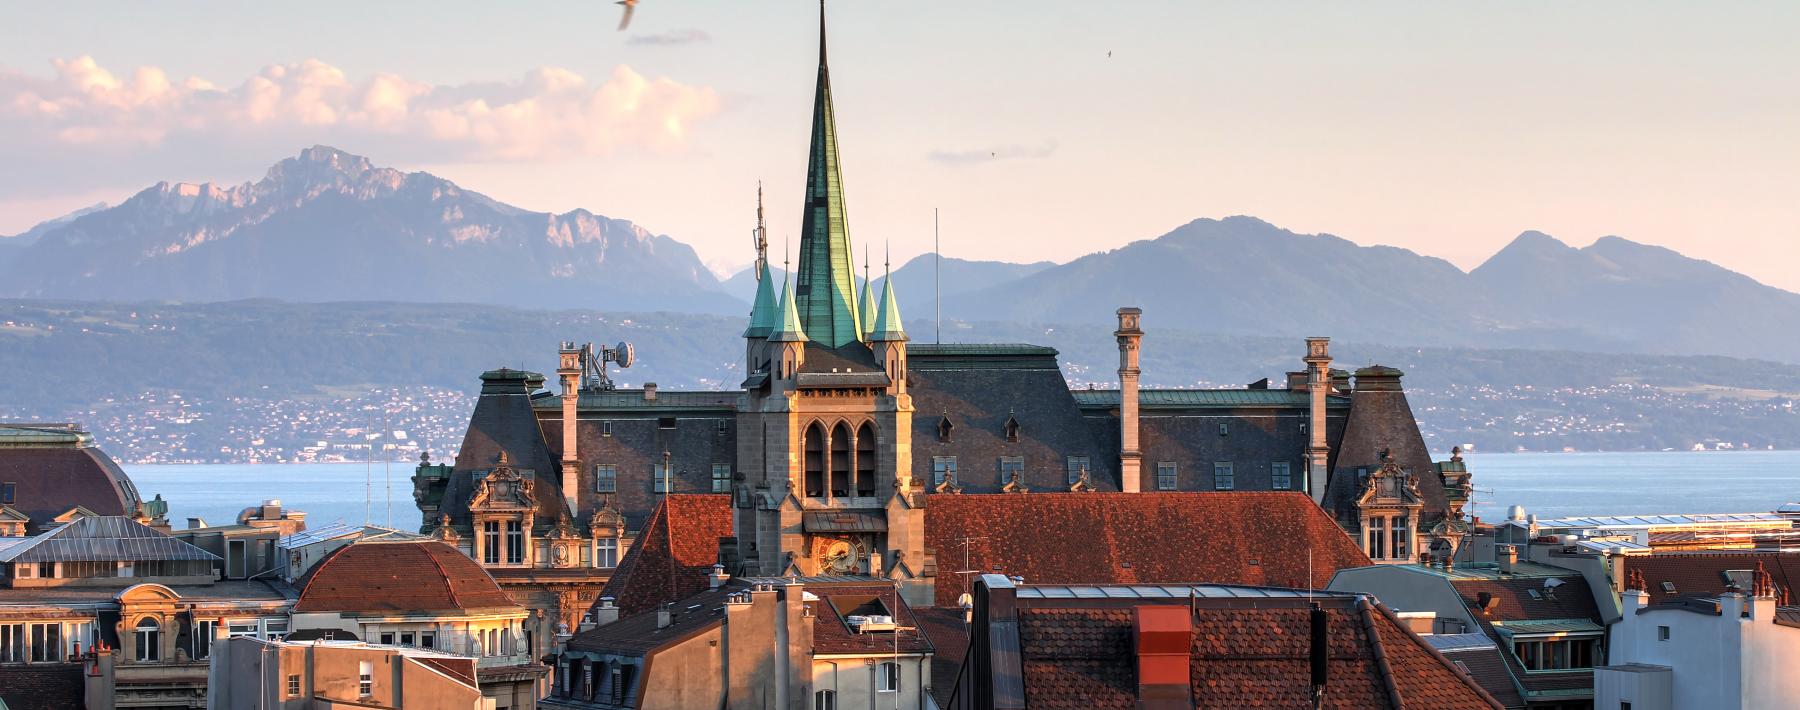 Lausanne-1 Лозанна (Lausanne), Швейцария - путеводитель по городу, достопримечательности Лозанны. Что посмотреть в Лозанне, как добраться - расписание, стоимость